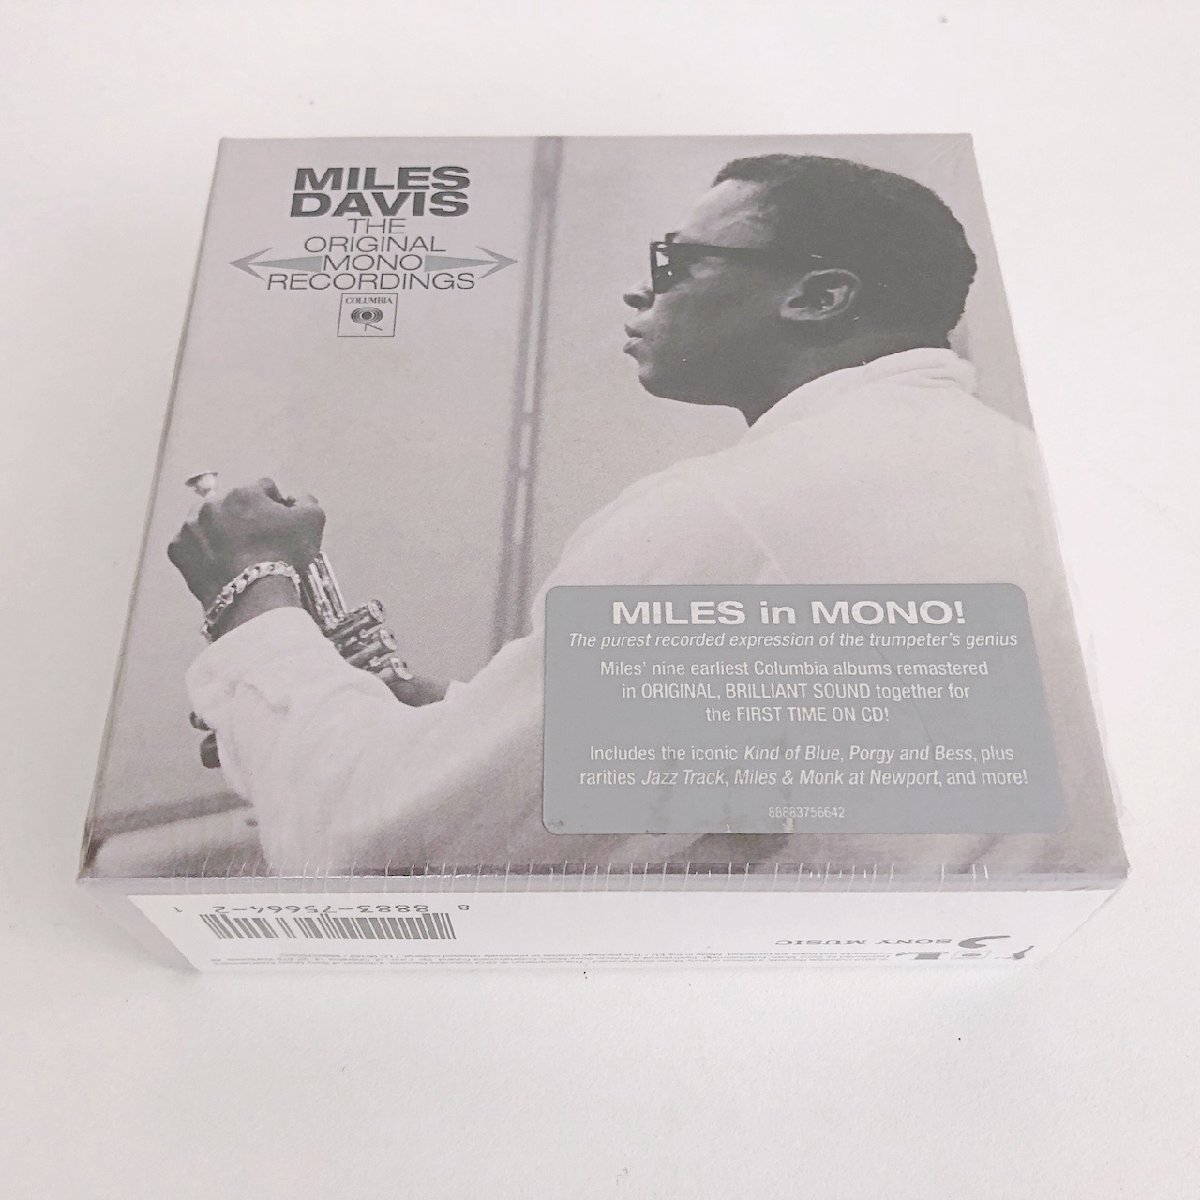 【美品】CD/ 9CD / MILES DAVIS / THE ORIGINAL MONO RECORDINGS / マイルス・デイヴィス / 輸入盤 9枚組 BOX 888837566421 40422_画像1